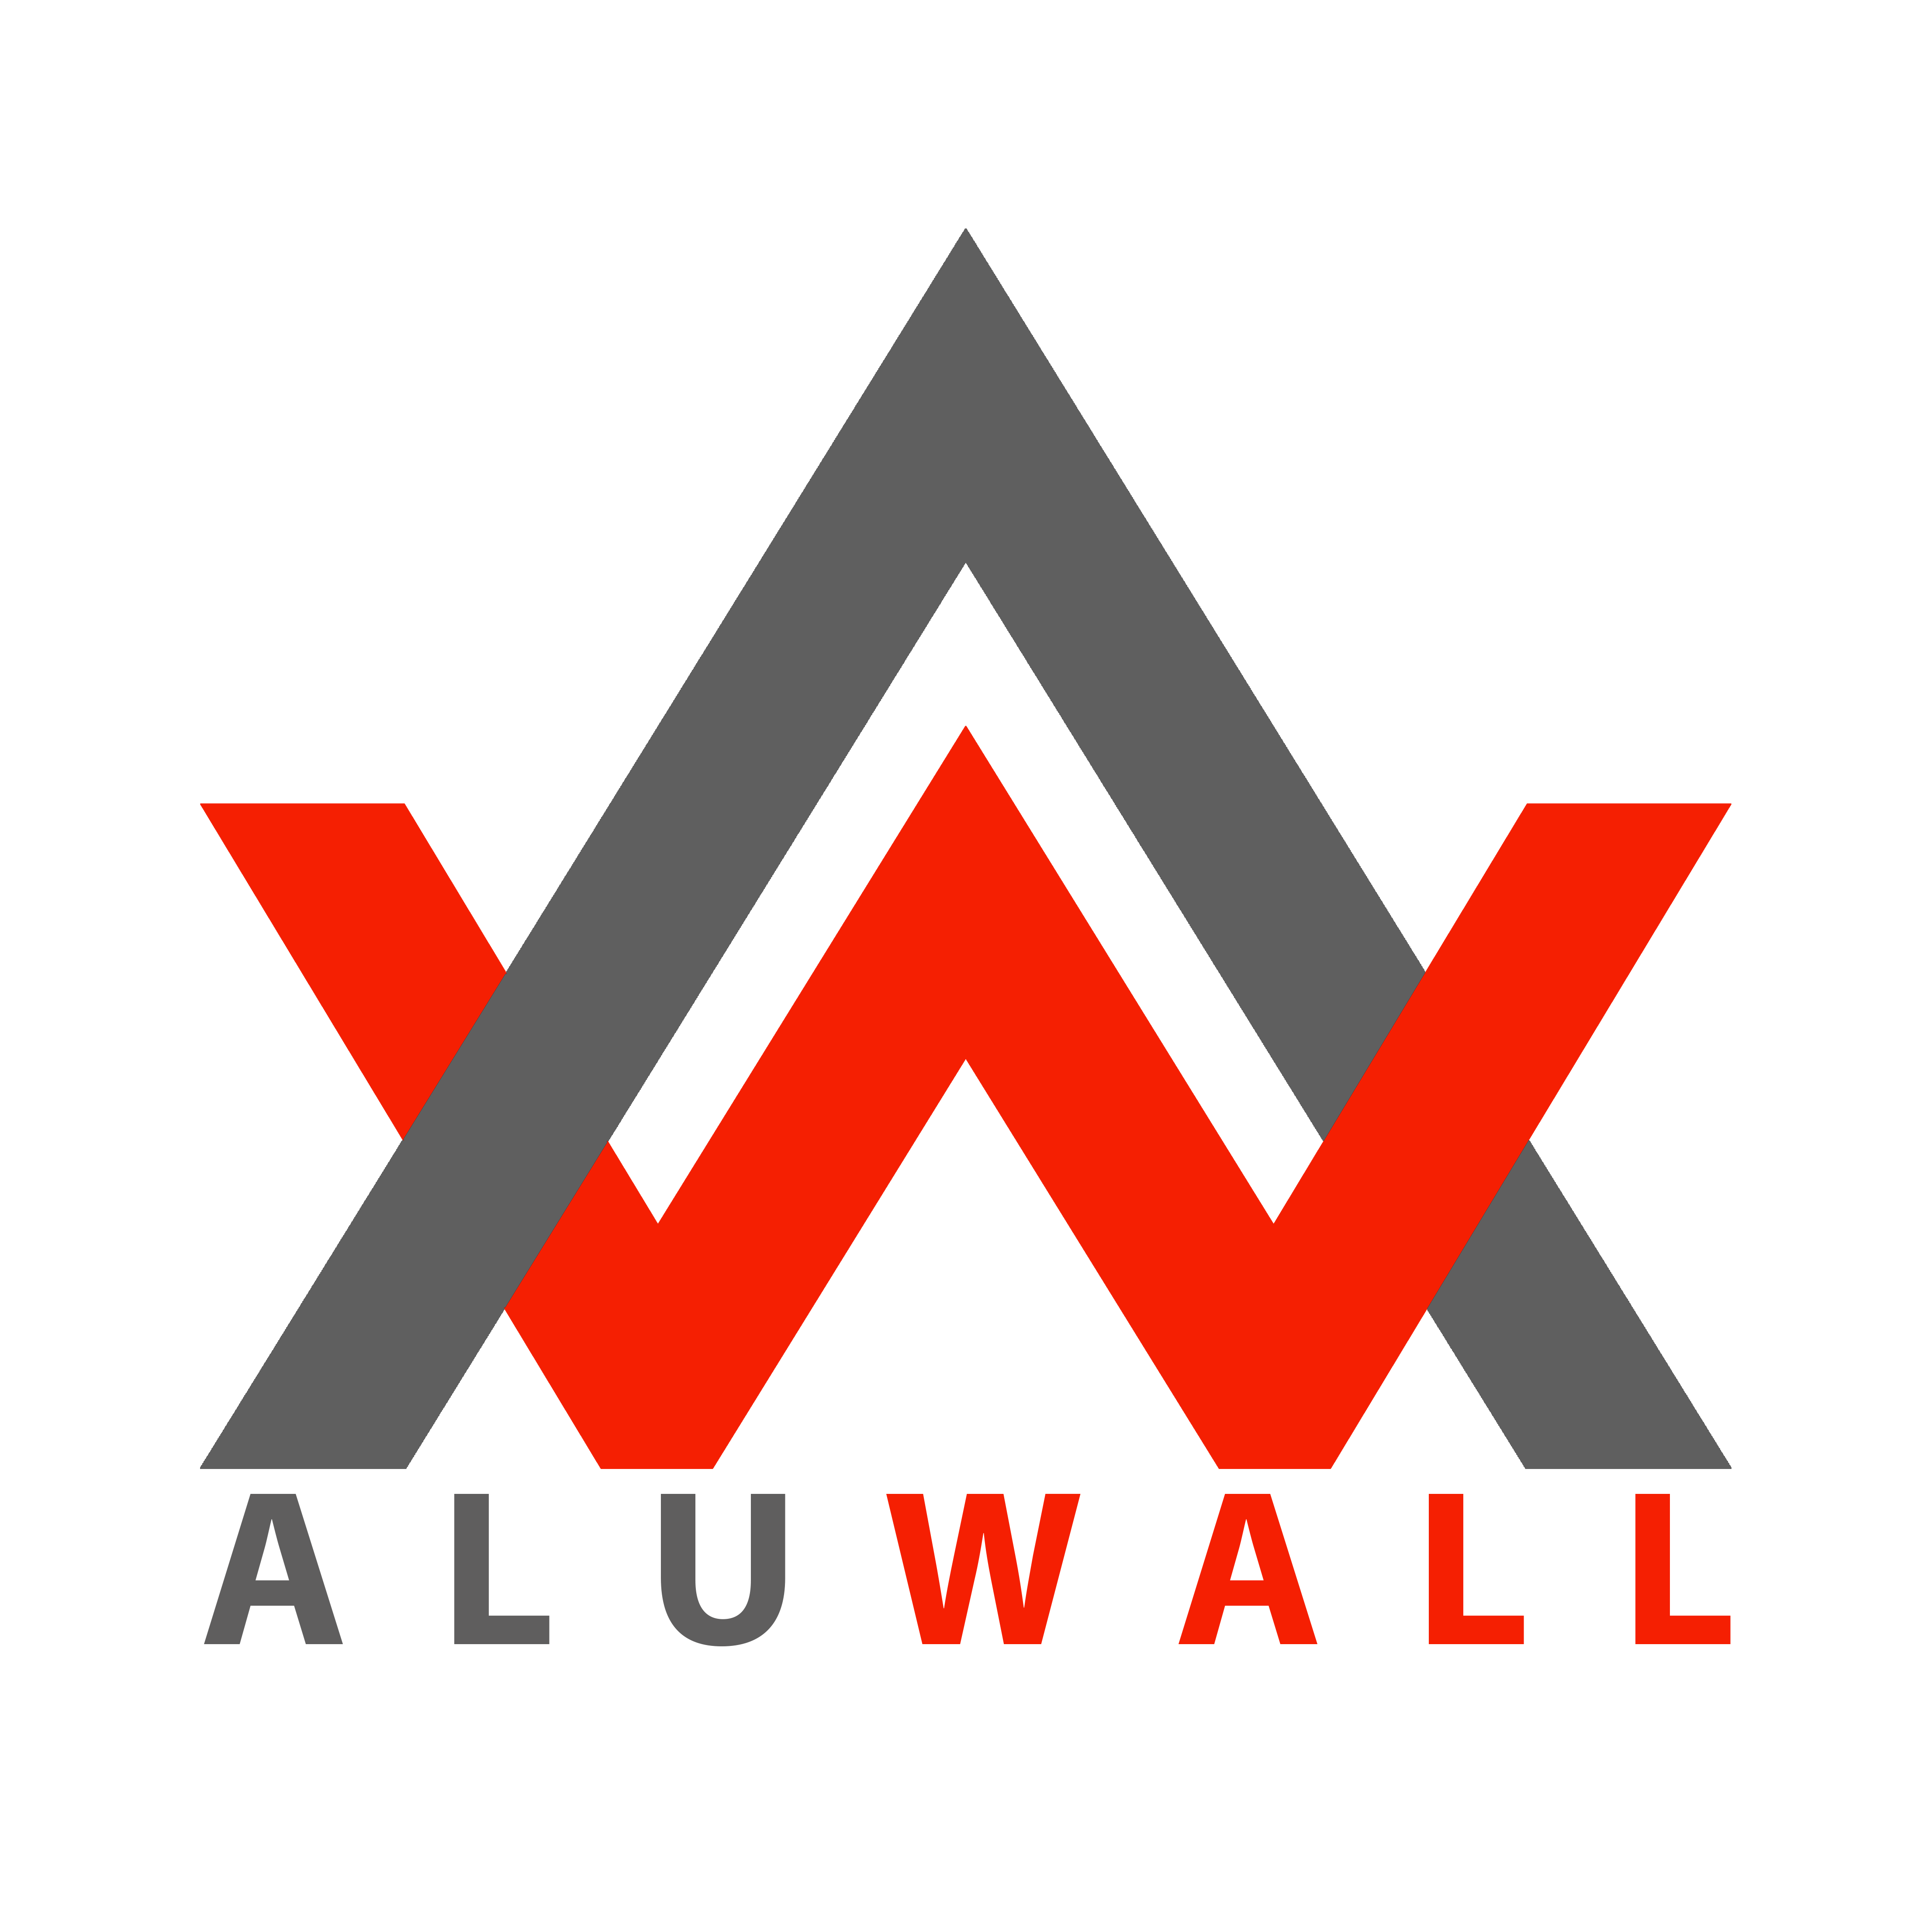 ALUWALL